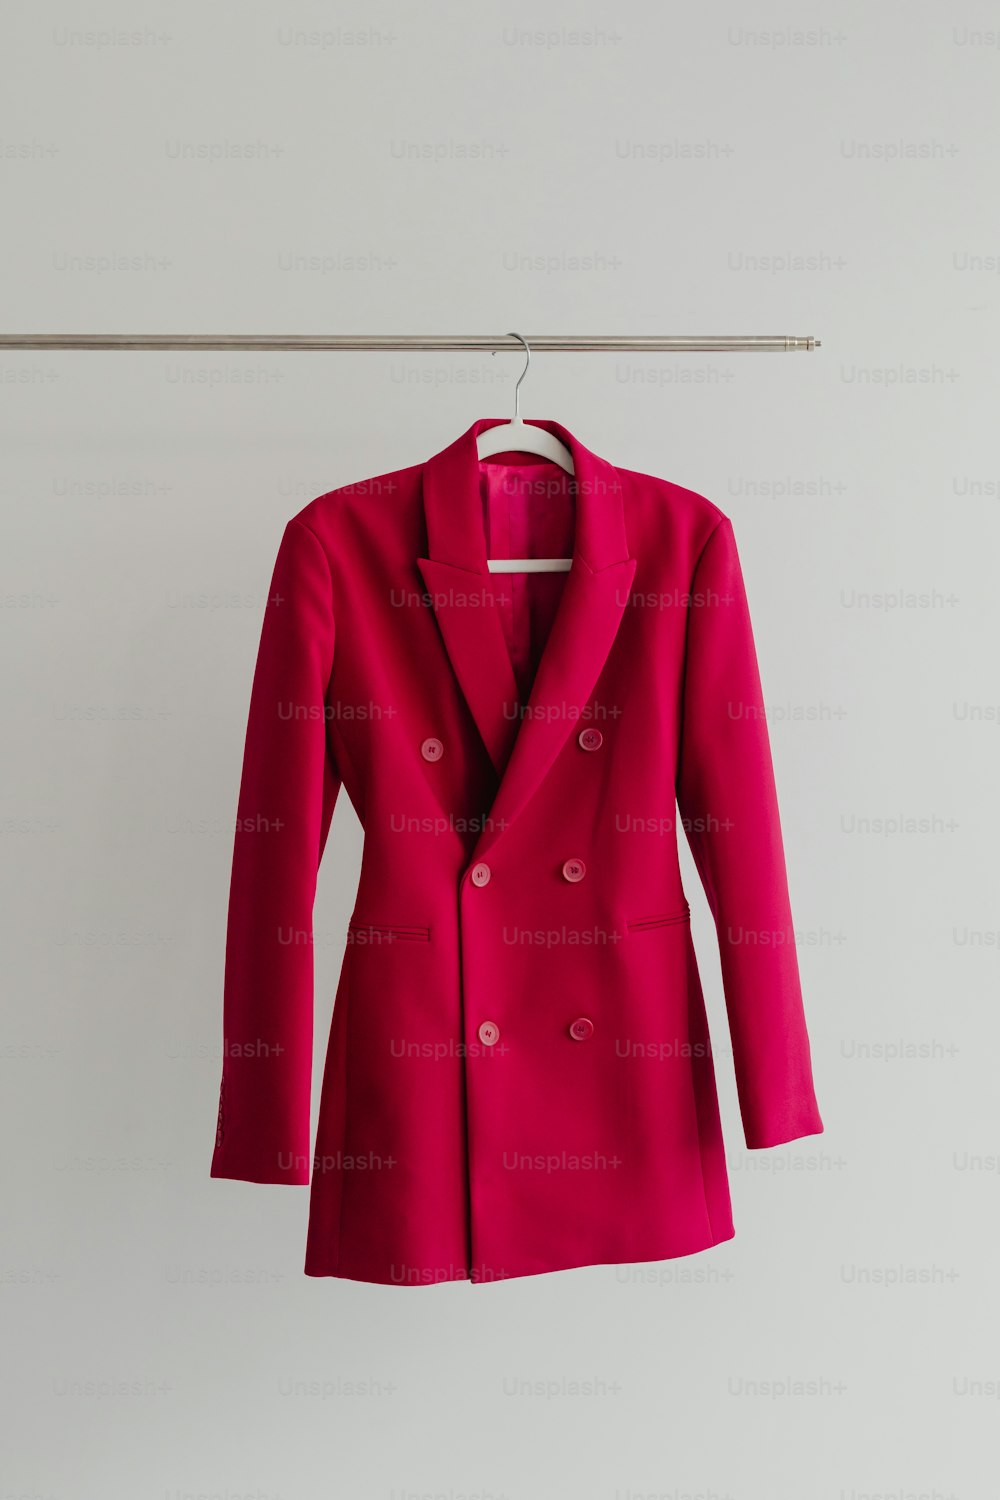 Una giacca rossa appesa a una linea di vestiti